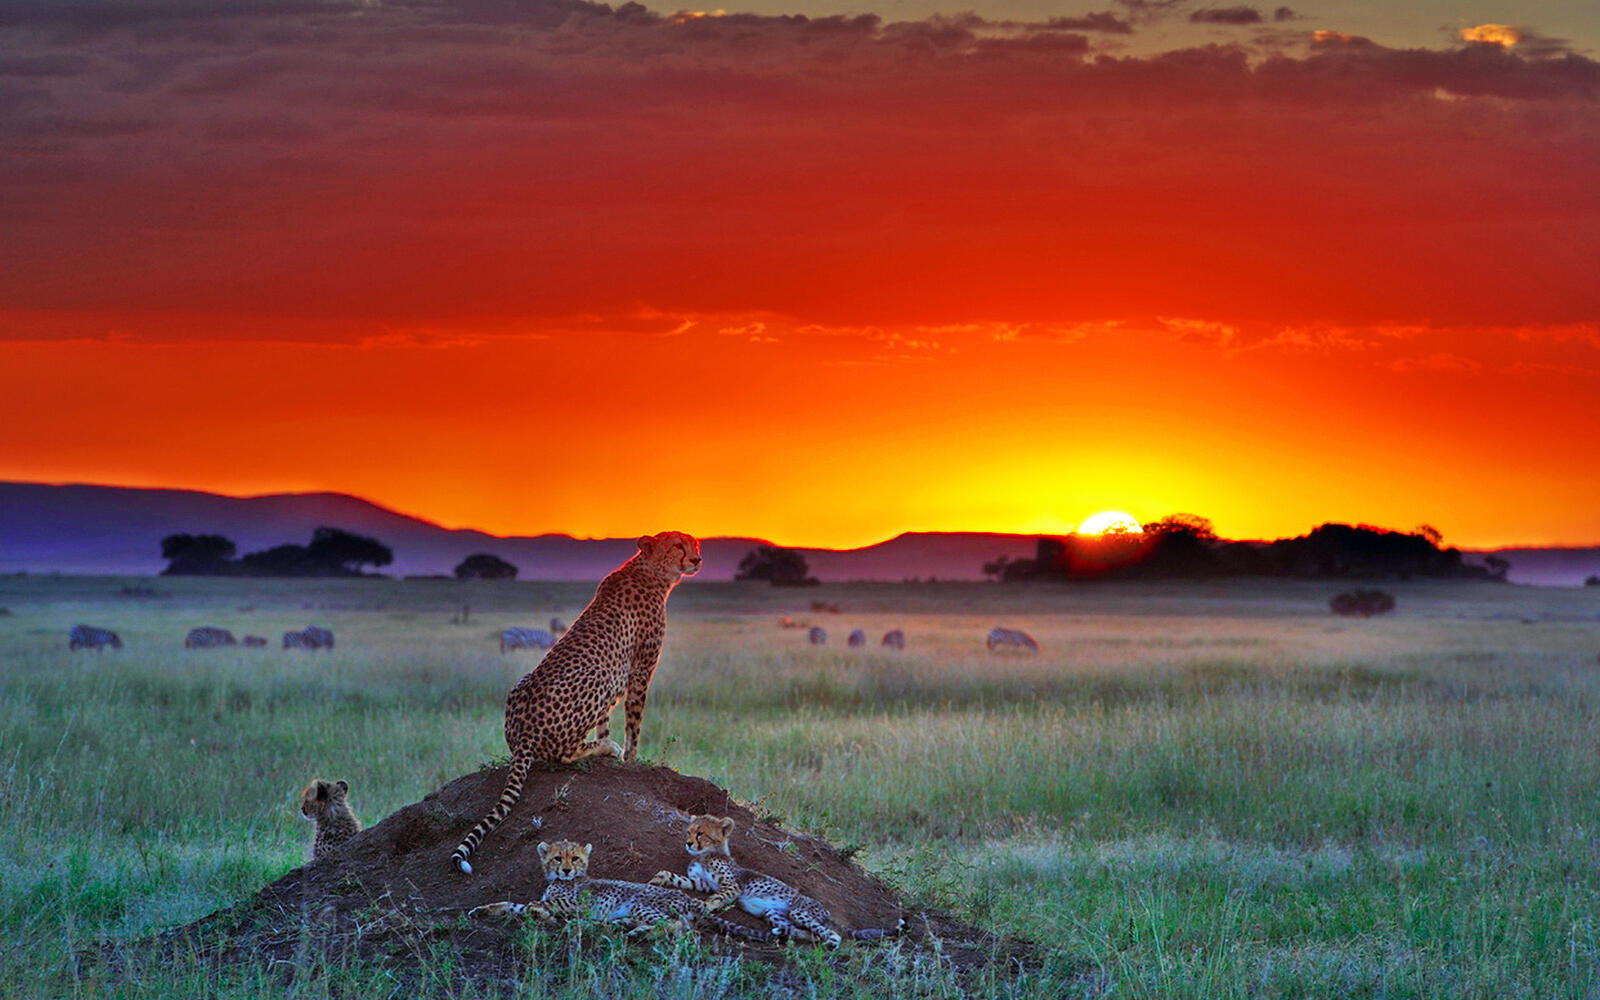 Wallpapers cheetahs savanna sunset on the desktop